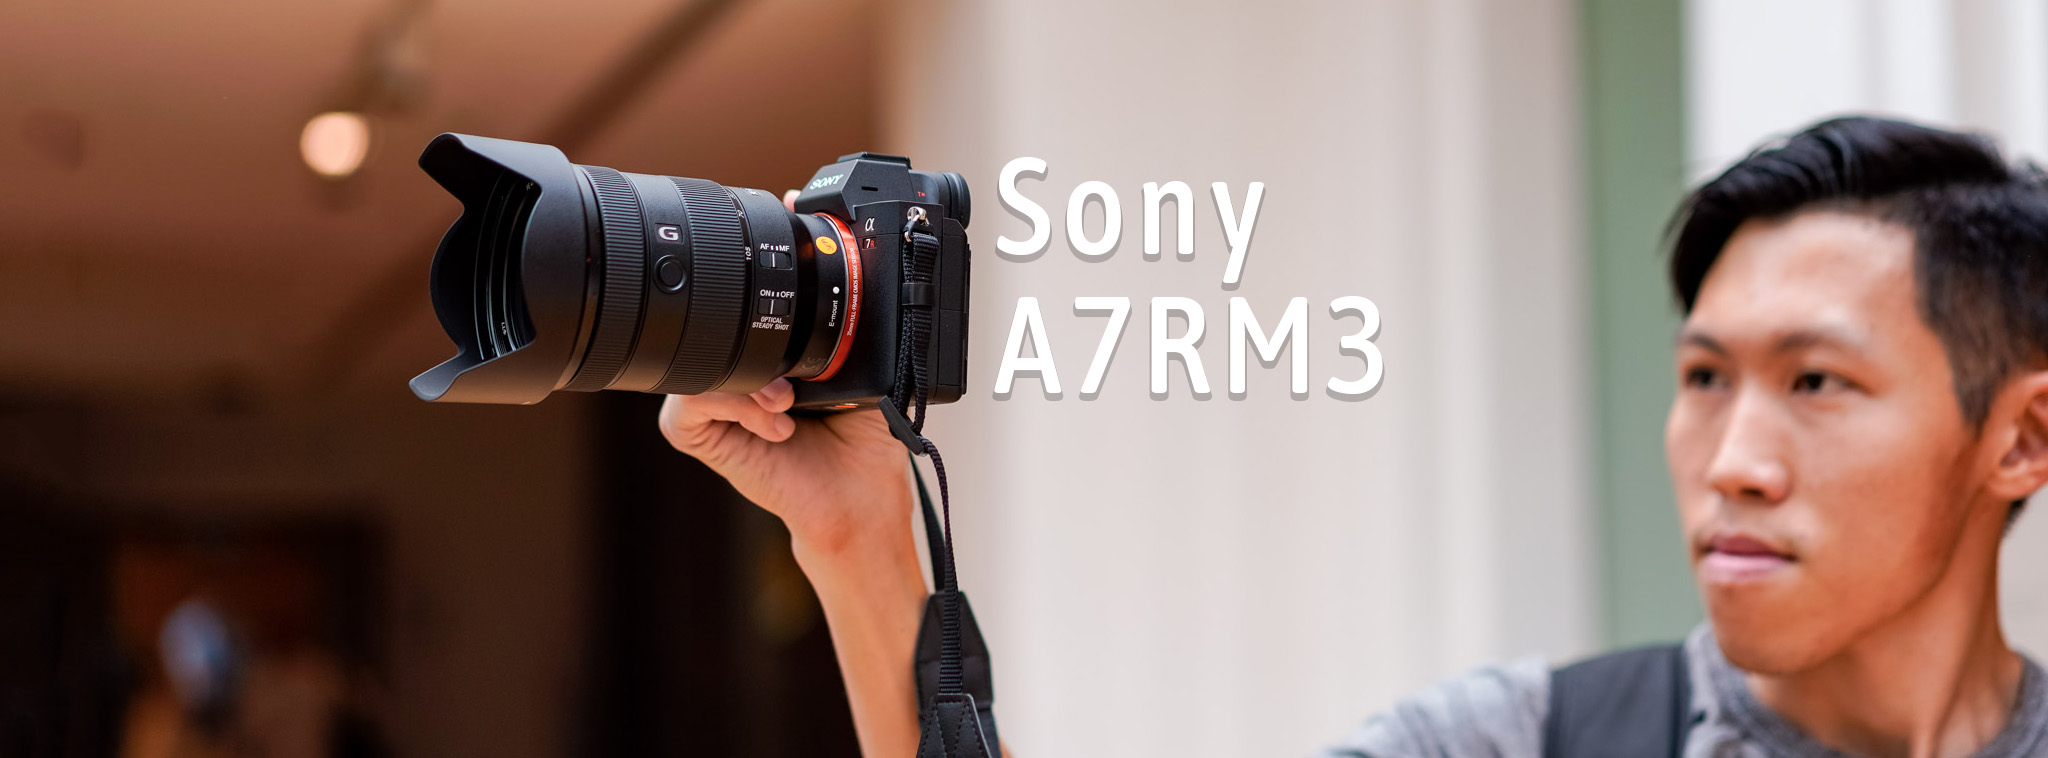 Trên tay Sony A7RM3: Máy ảnh mirrorless bán chuyên nghiệp, USB-C, hai khe SD, quay phim 4K HDR